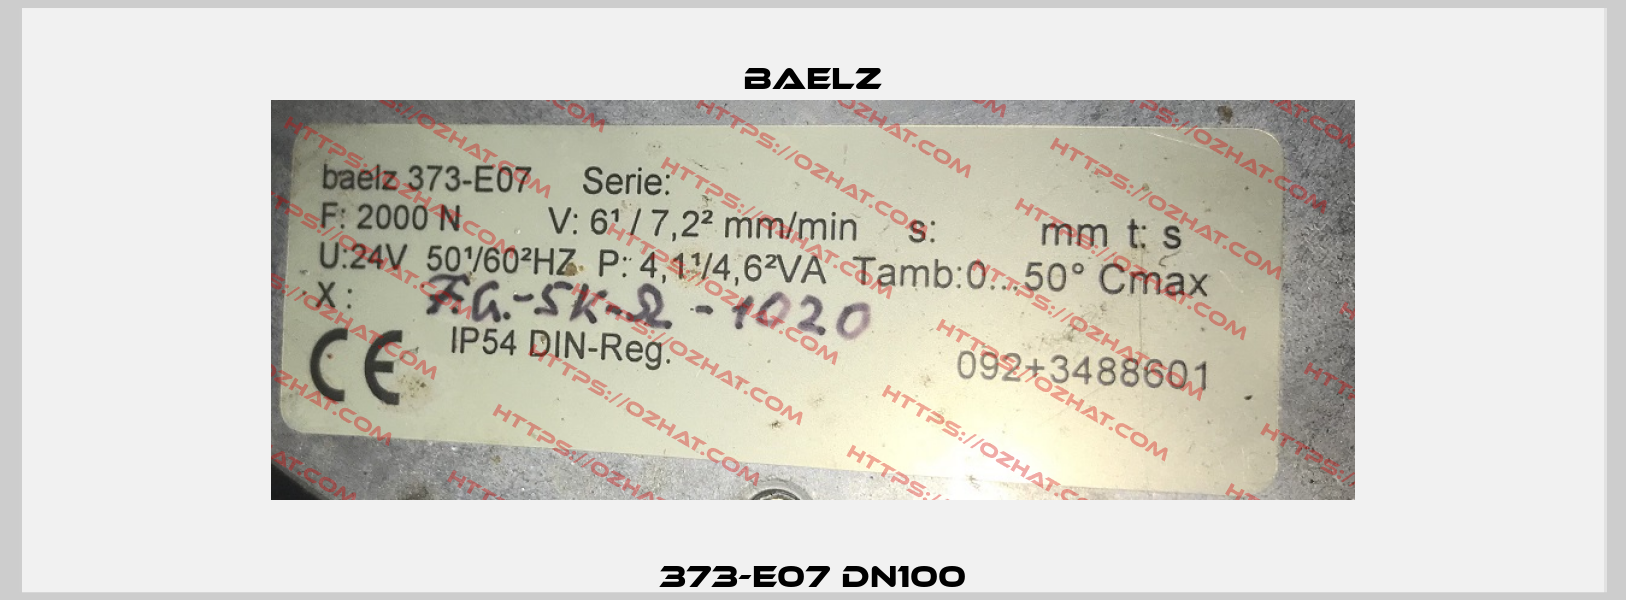 373-E07 DN100 Baelz